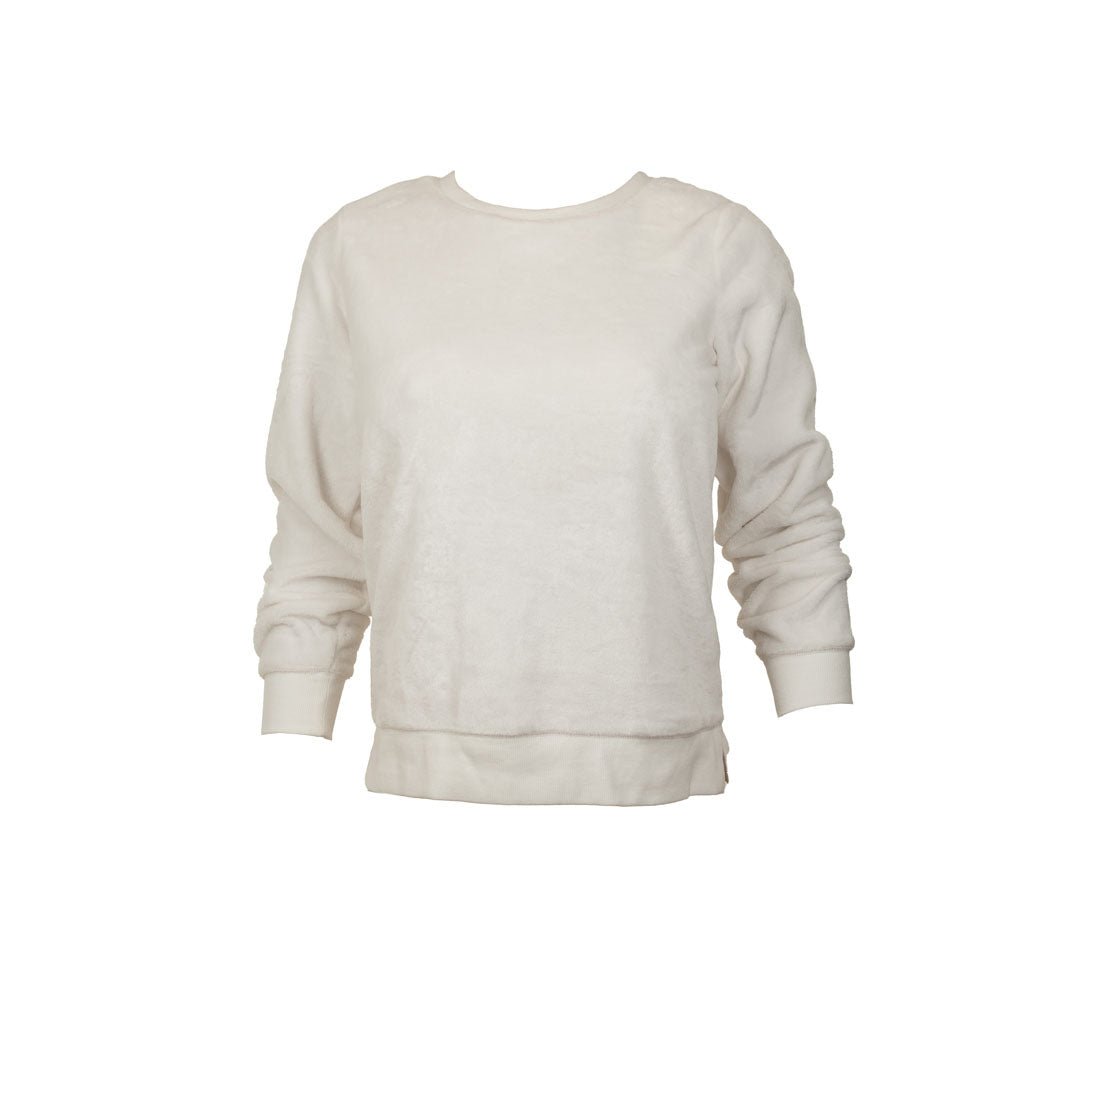 Gaiam Brand New Sweatshirt - mymadstore.com